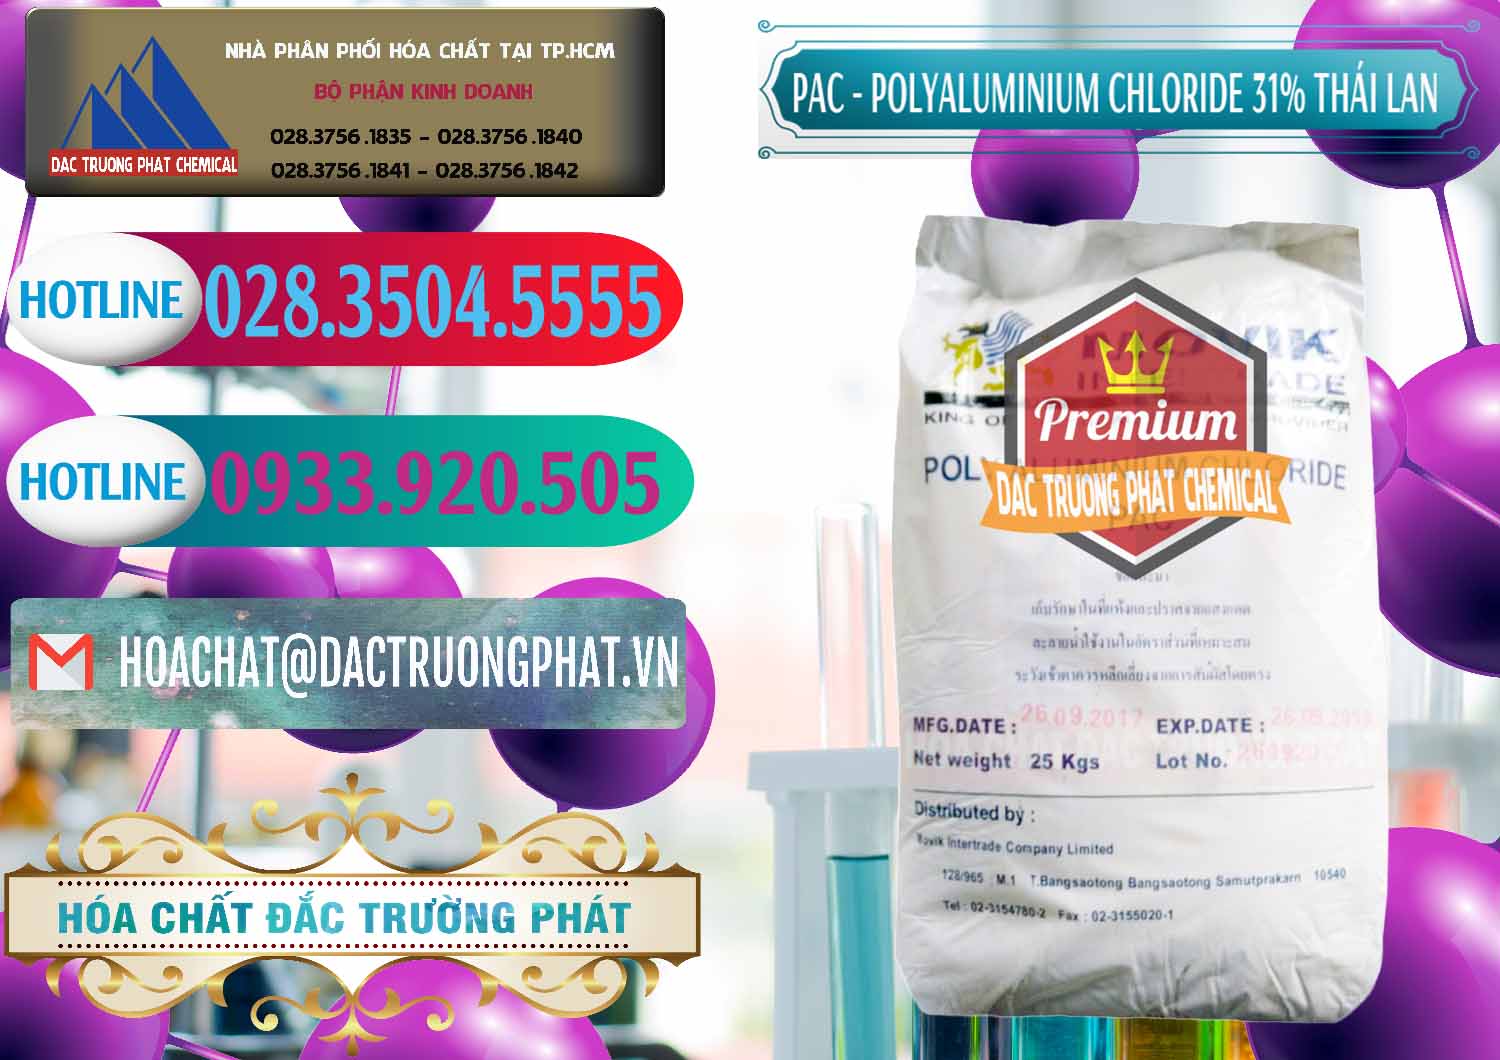 Cty bán _ cung cấp PAC - Polyaluminium Chloride 31% Thái Lan Thailand - 0469 - Chuyên nhập khẩu - phân phối hóa chất tại TP.HCM - truongphat.vn